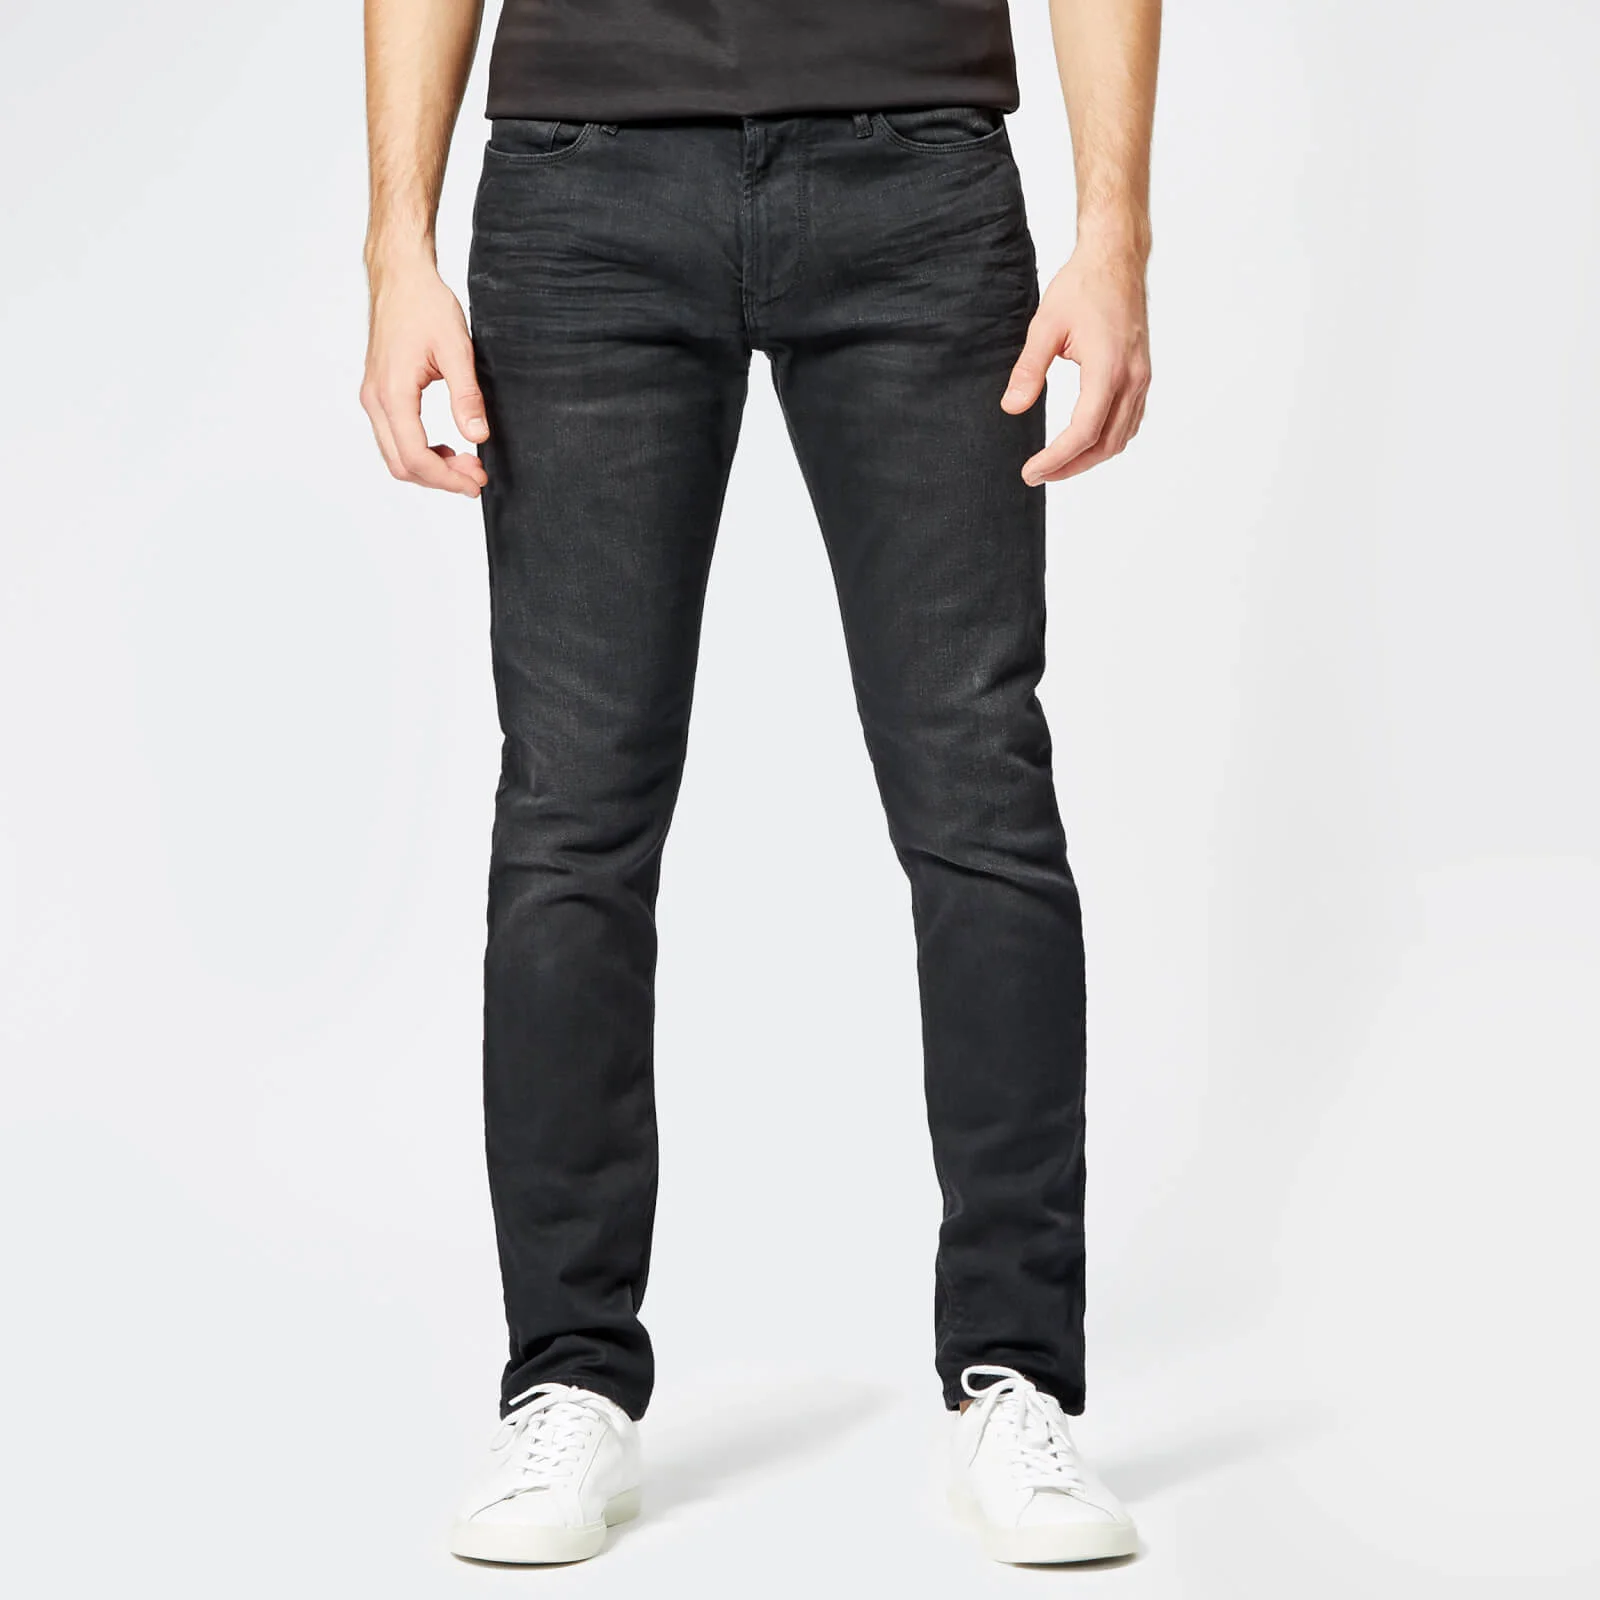 Emporio Armani Men's 5 Pocket Skinny Denim Jeans - Denim Nero Image 1